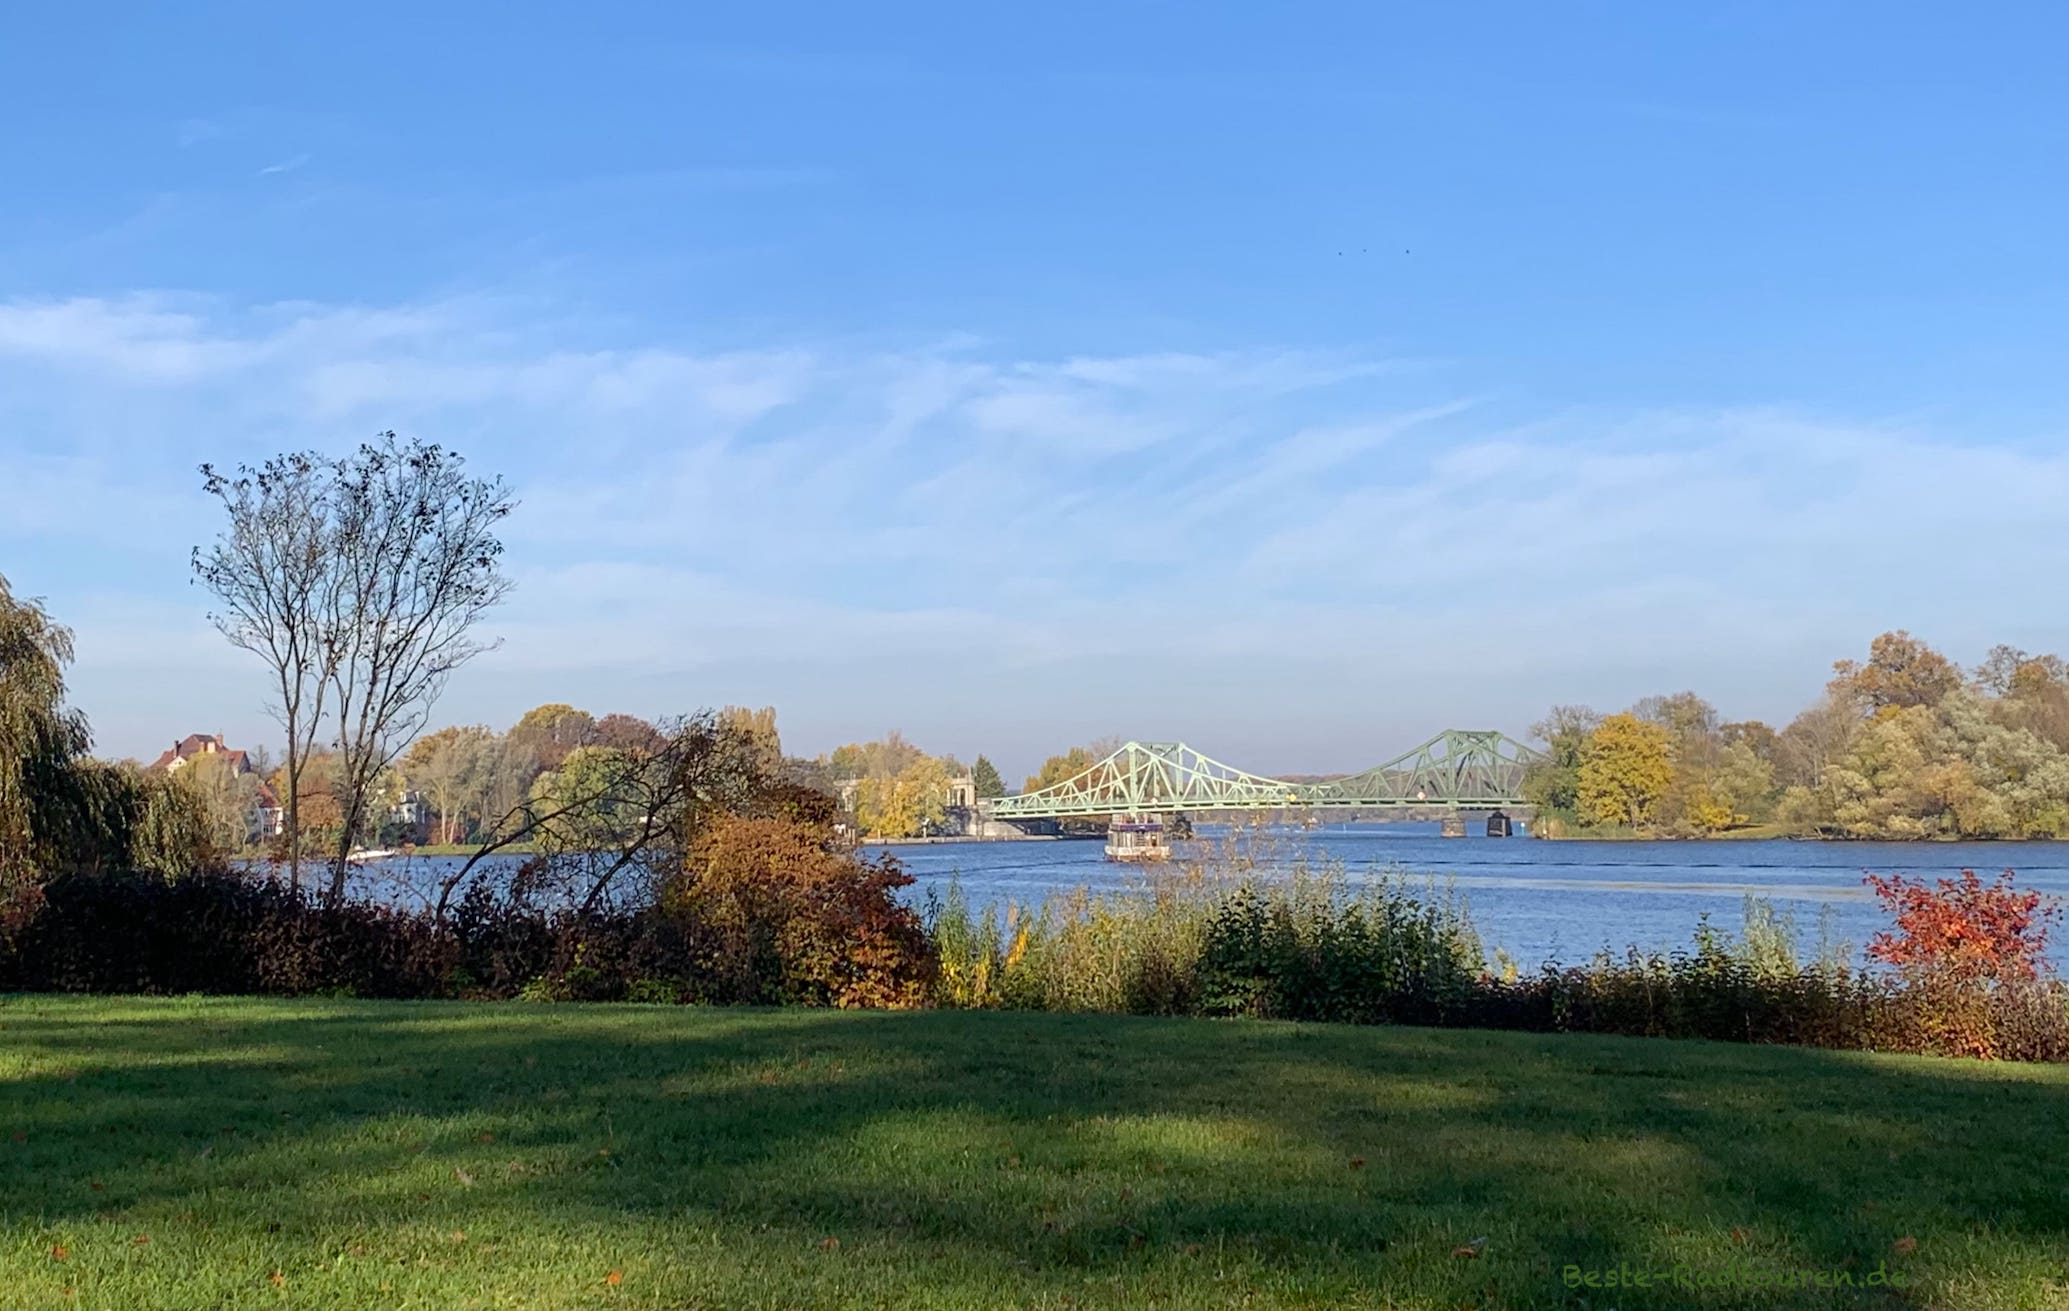 Die Glienicker Brücke, Foto vom Babelsberger Park aus, dazwischen die Havel